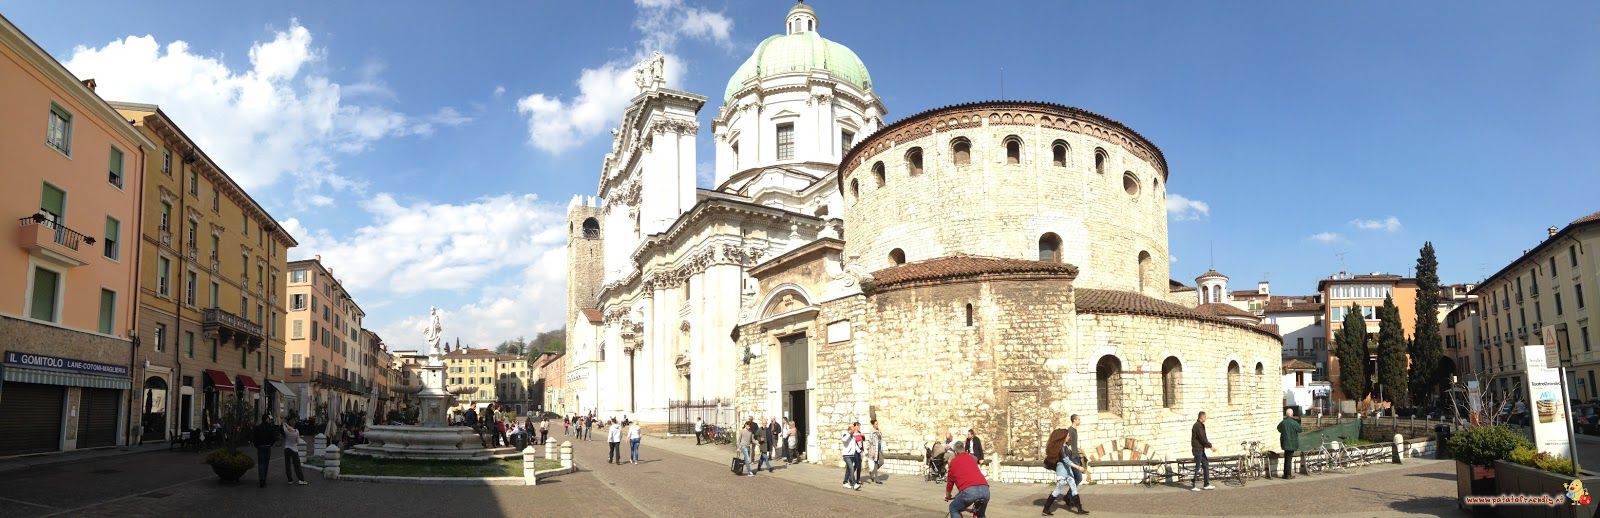 Piazza Duomo Brescia